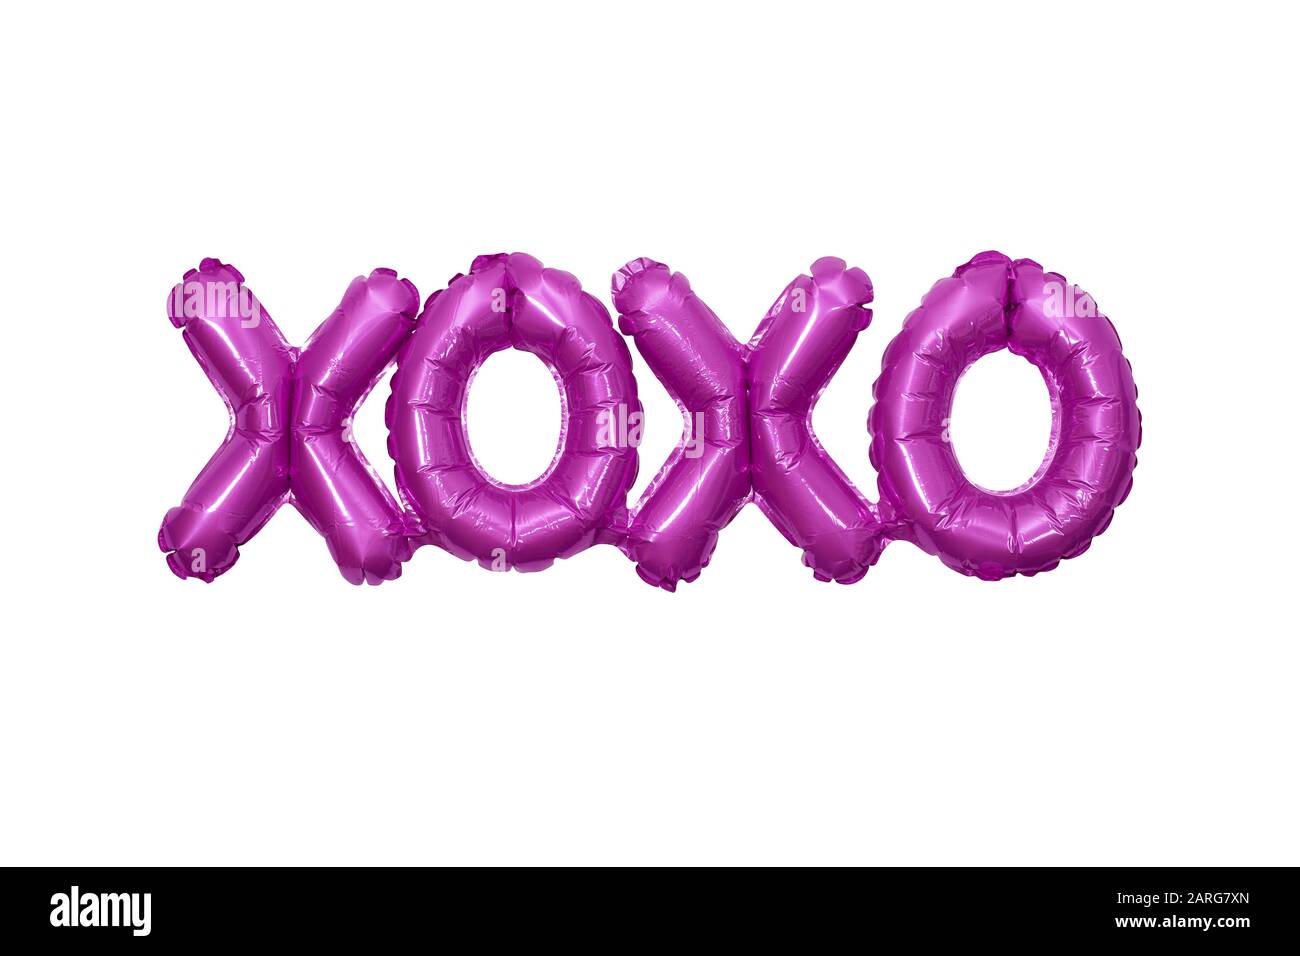 Überhöhter Partyballon, der die Buchstaben XOXO bildet, was Umarmungen und Küsse bedeutet Stockfoto